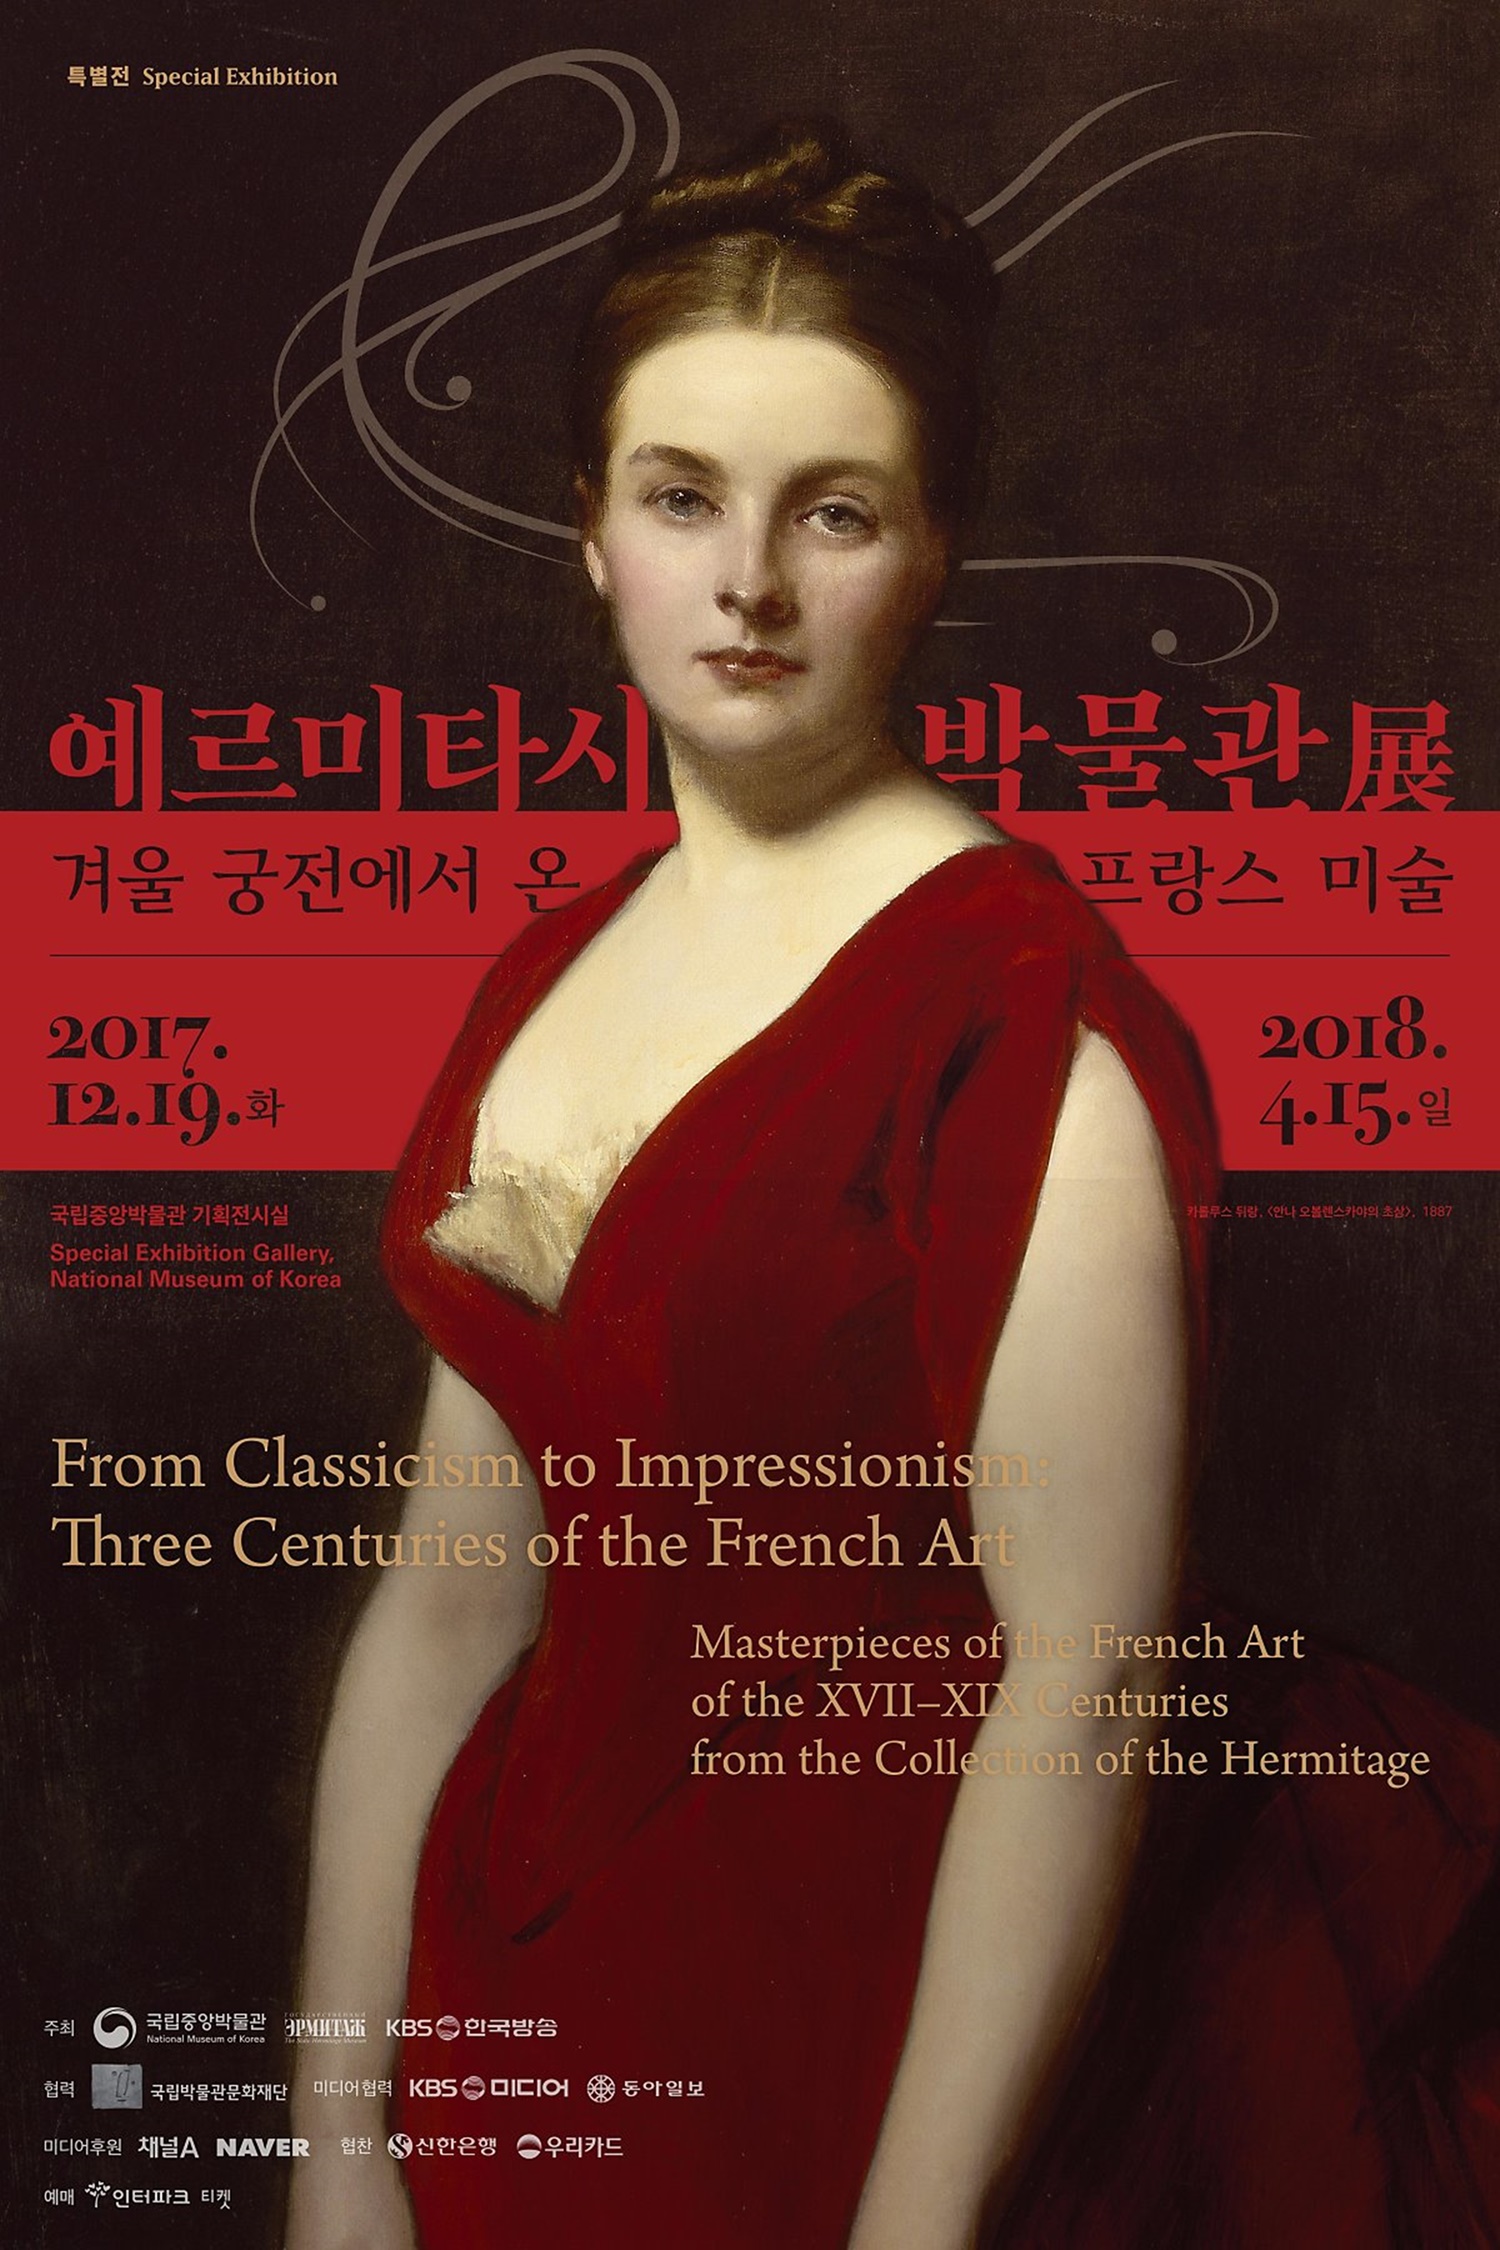 <예르미타시 박물관展, 겨울 궁전에서 온 프랑스 미술> 포스터 출처 : 예르미타시 박물관展 공식홈페이지